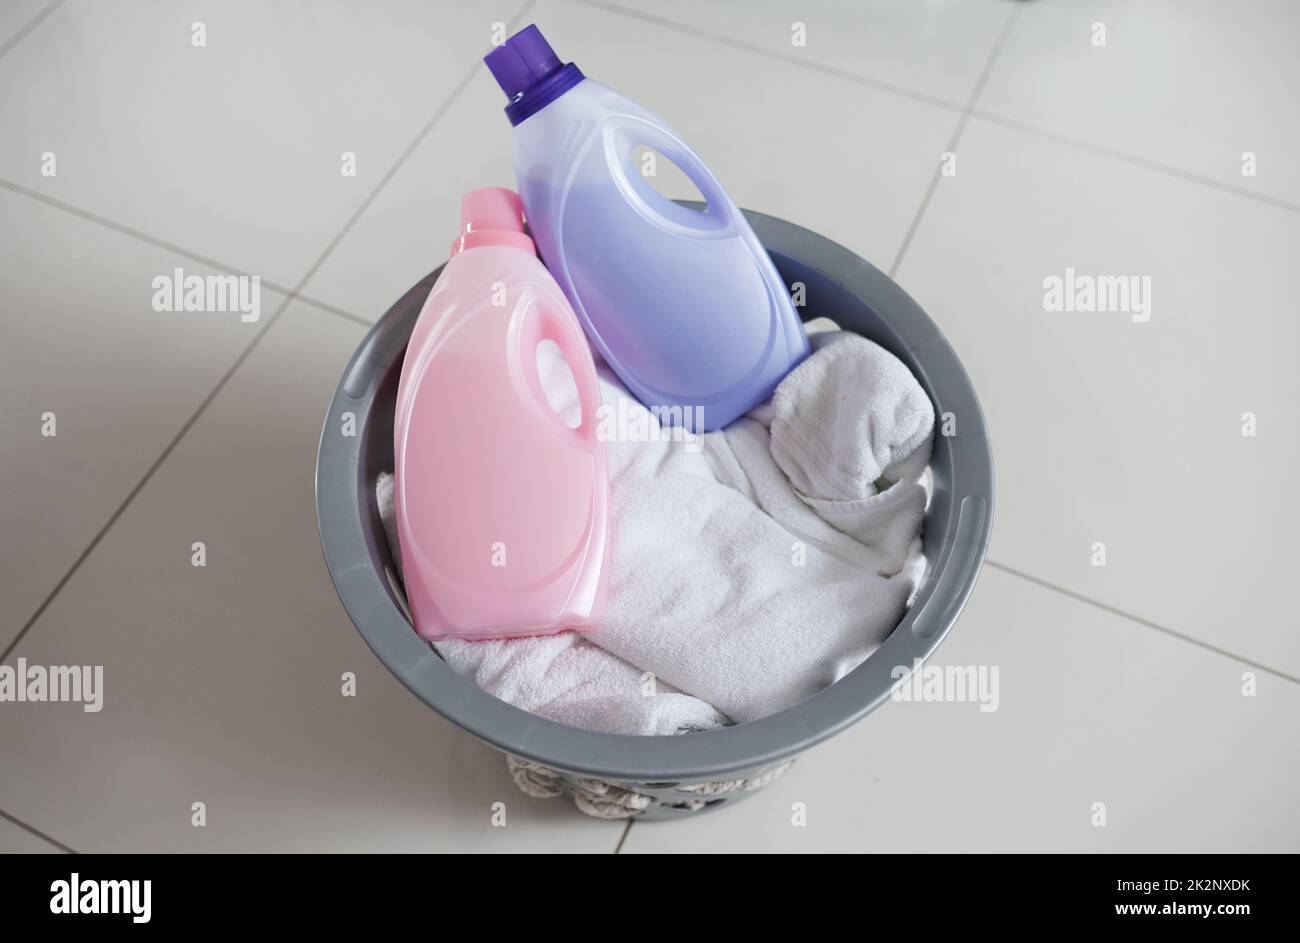 Washing softener immagini e fotografie stock ad alta risoluzione - Alamy